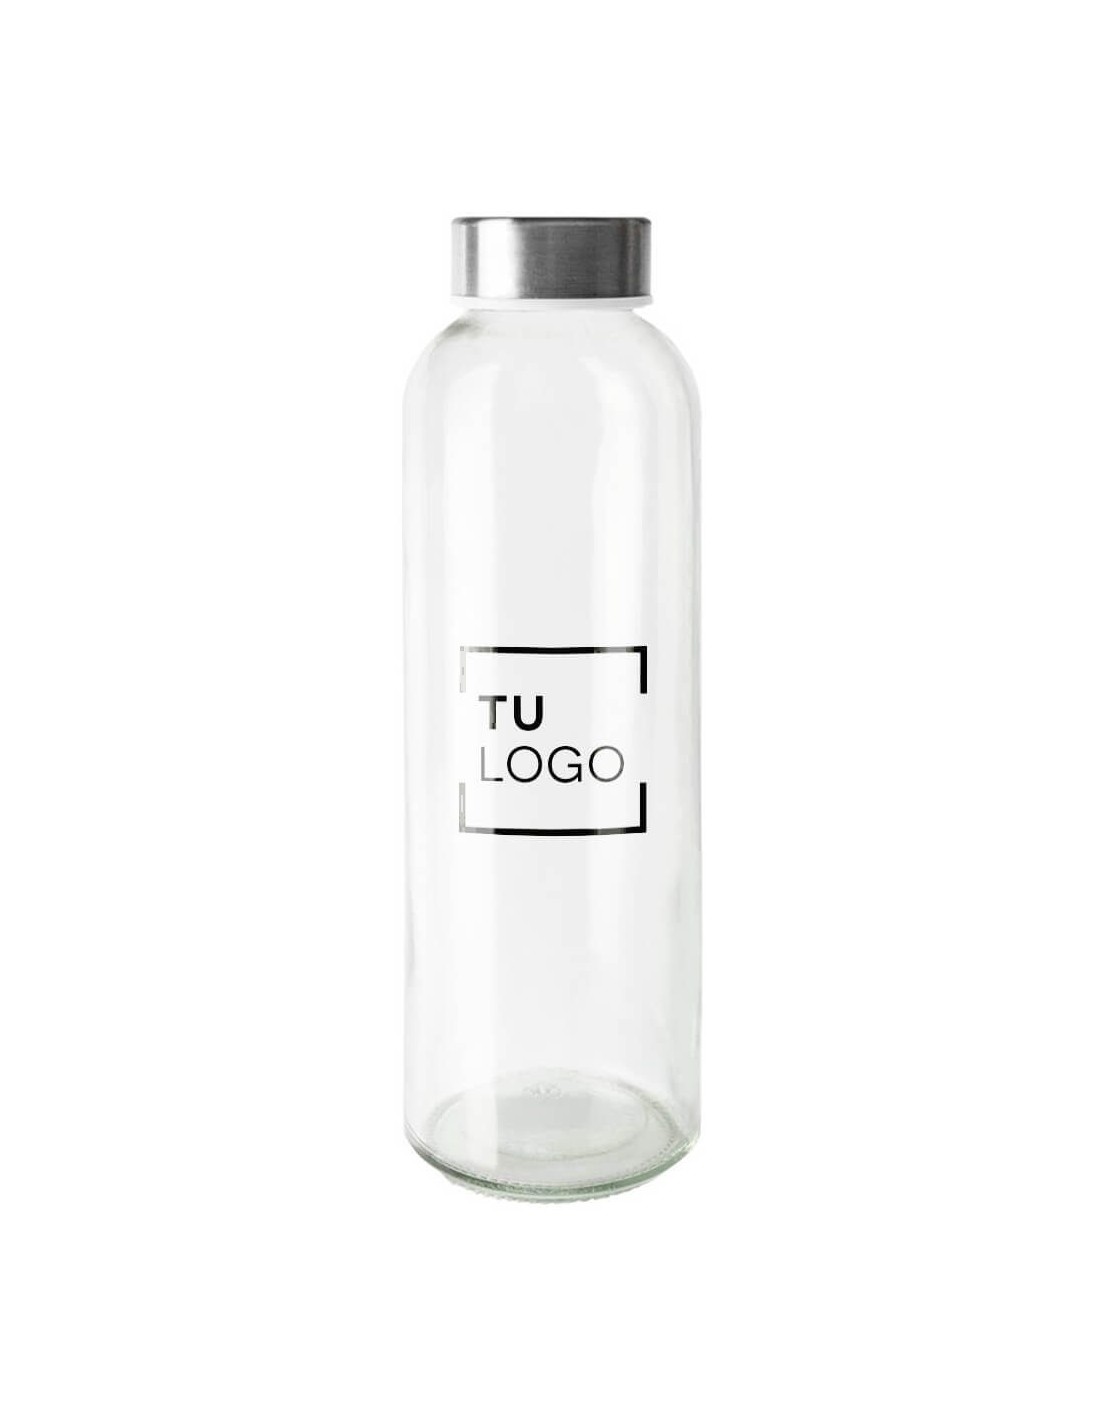 Botellas de cristal para personalizar con tu logo de empresa